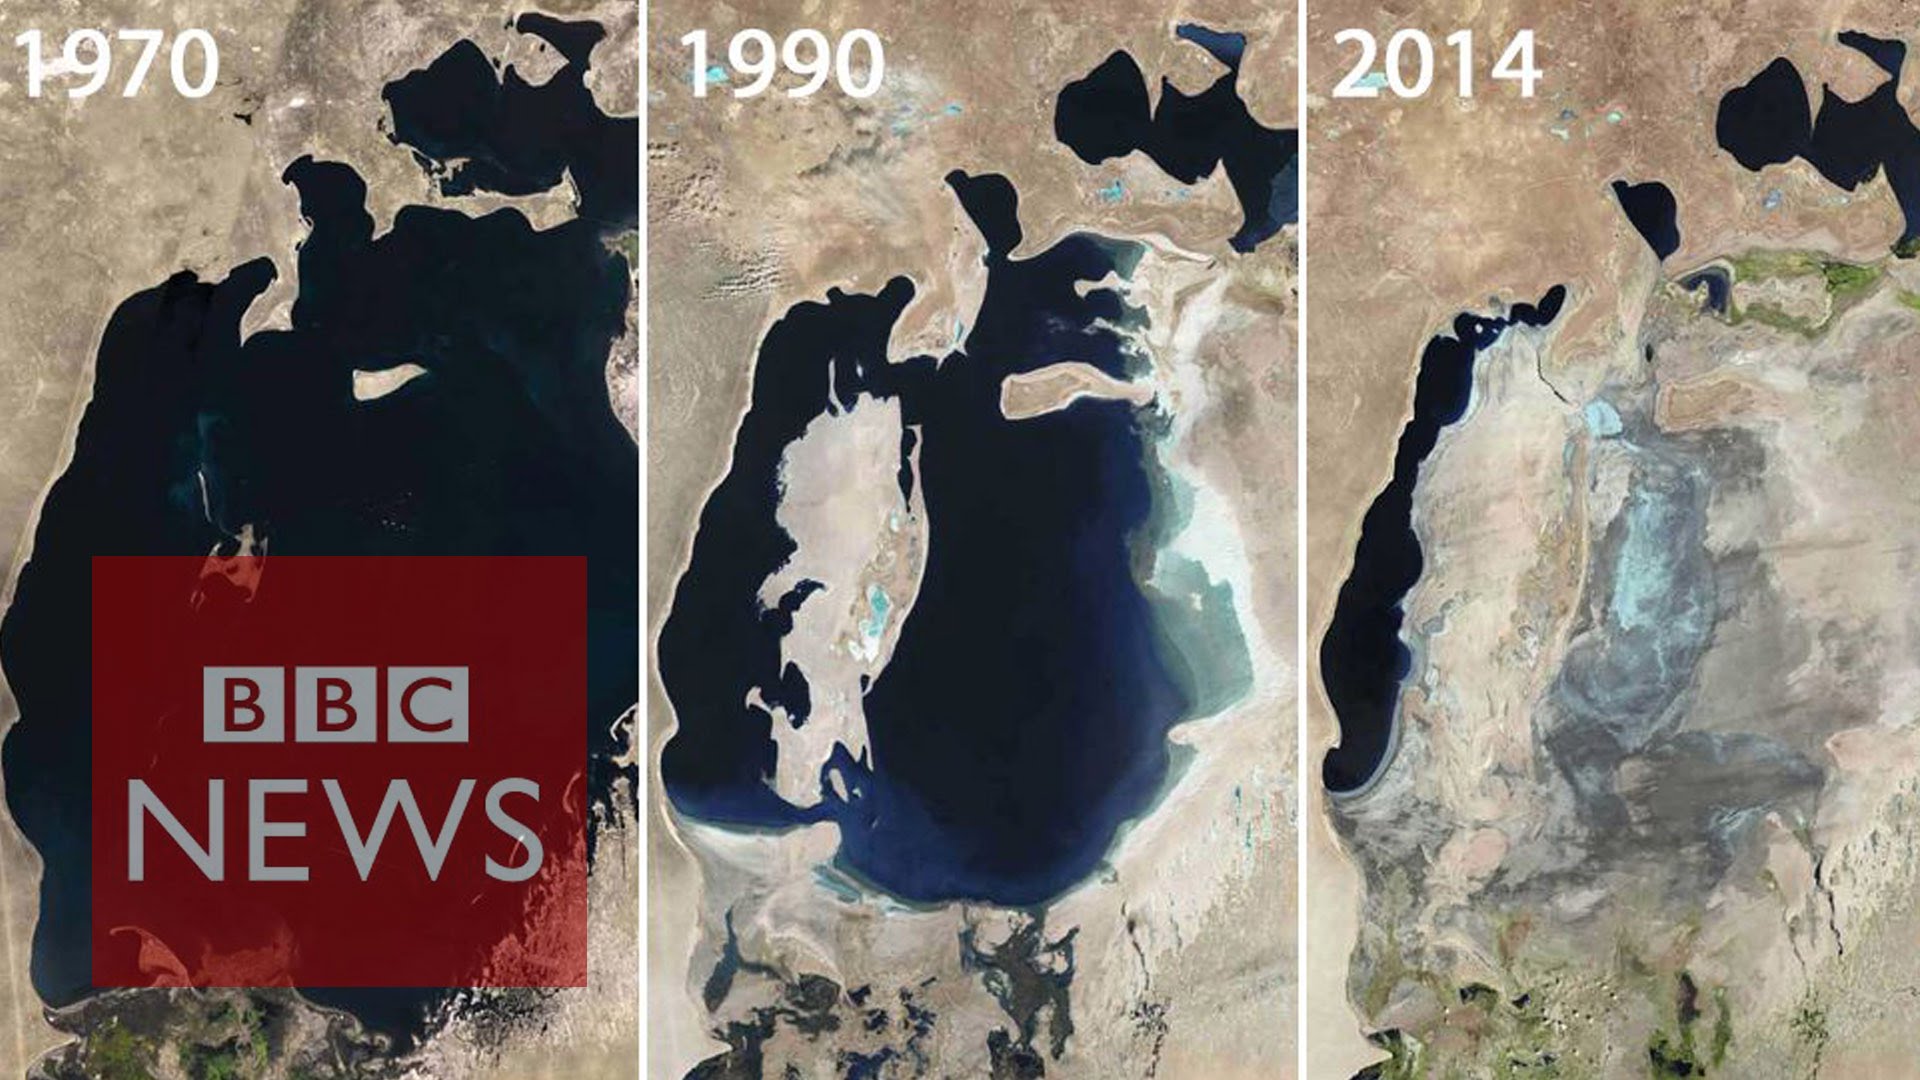 Aral Sea: Man-made environmental disaster - BBC News